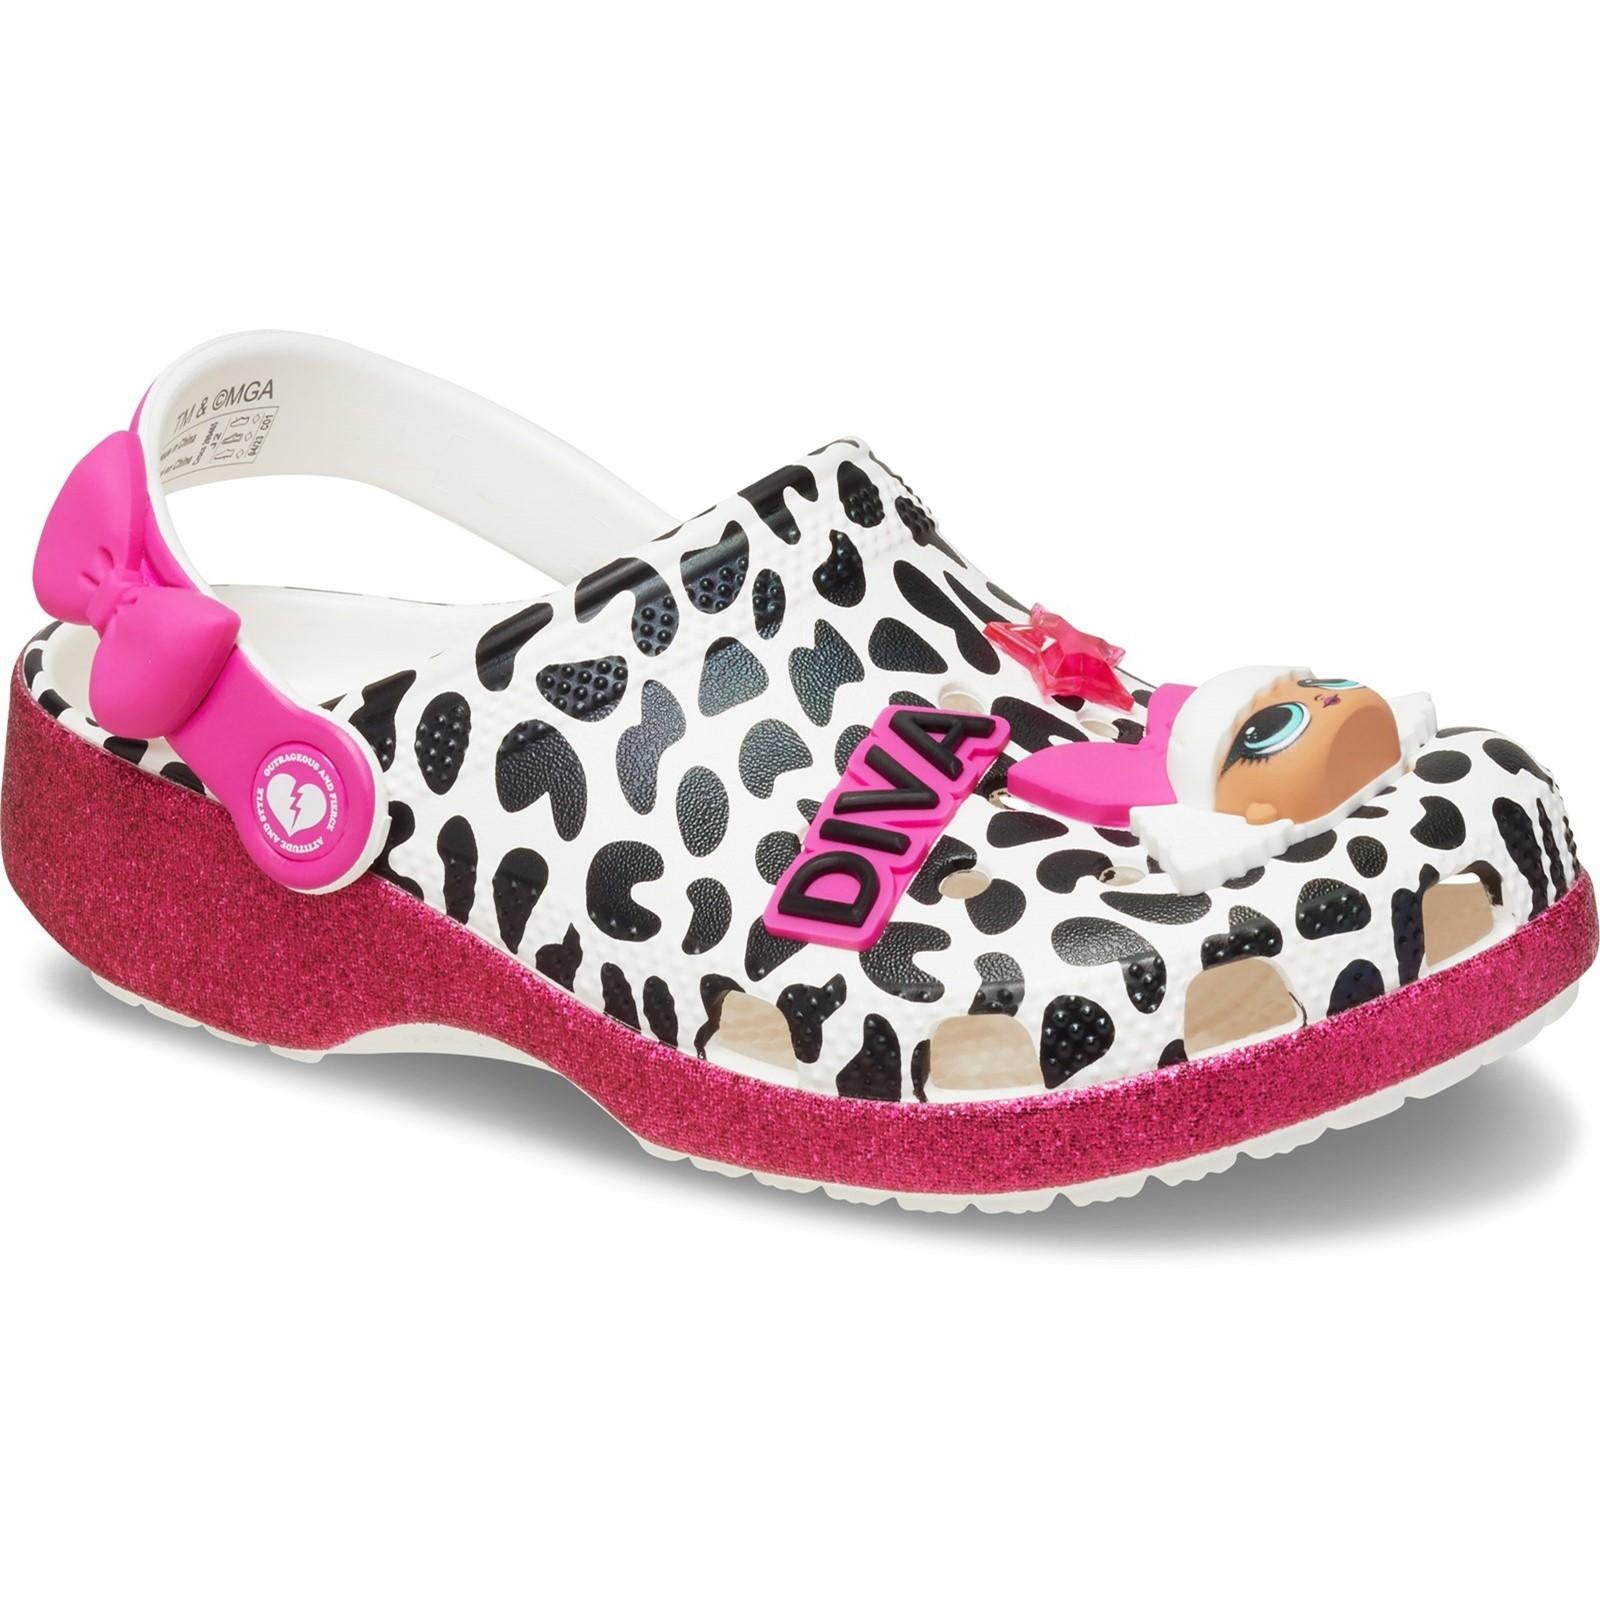 Crocs LOL Surprise Diva Clog Shoes